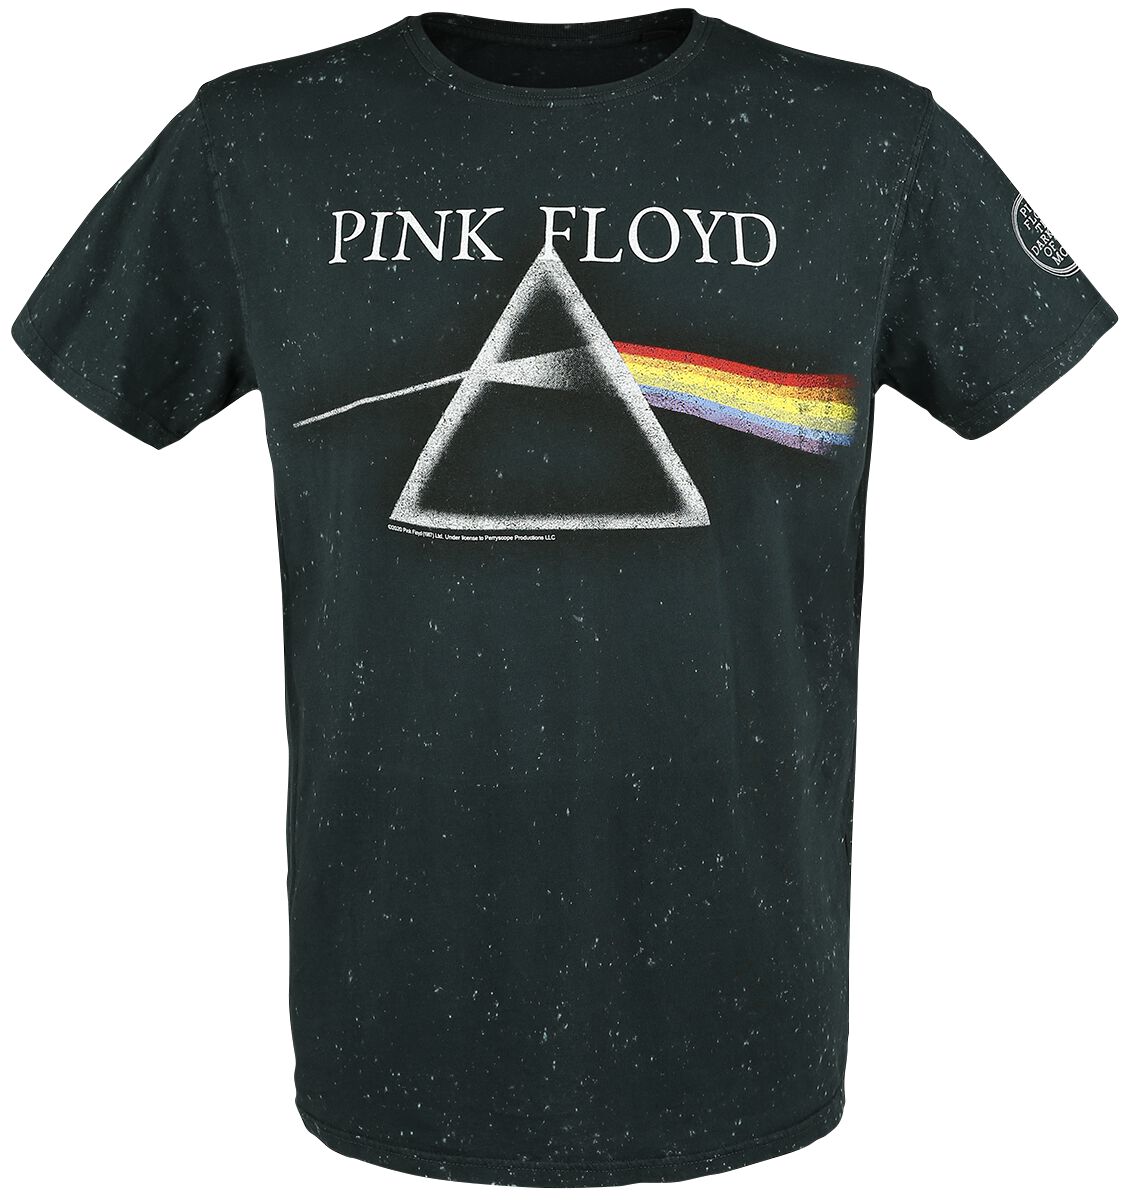 Pink Floyd T-Shirt - The Dark Side Of The Moon - S bis 3XL - für Männer - Größe 3XL - anthrazit  - EMP exklusives Merchandise!